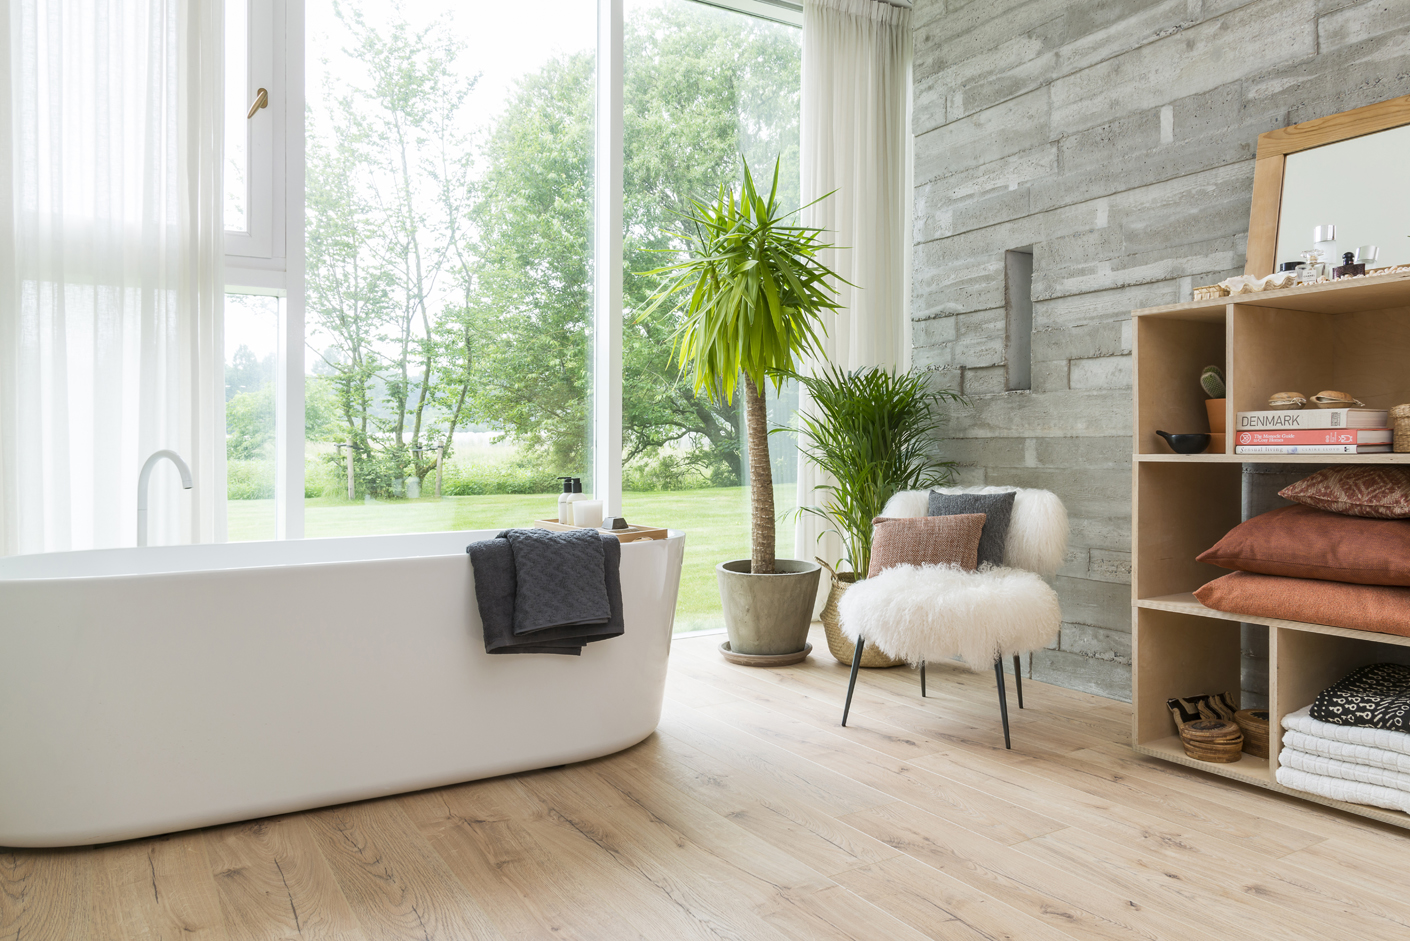 Une salle de bain inspire une qualité d'air intérieur saine avec sa vue sur un joli parc, sa baignoire immaculée et des plantes vertes sur un sol aspect bois clair.